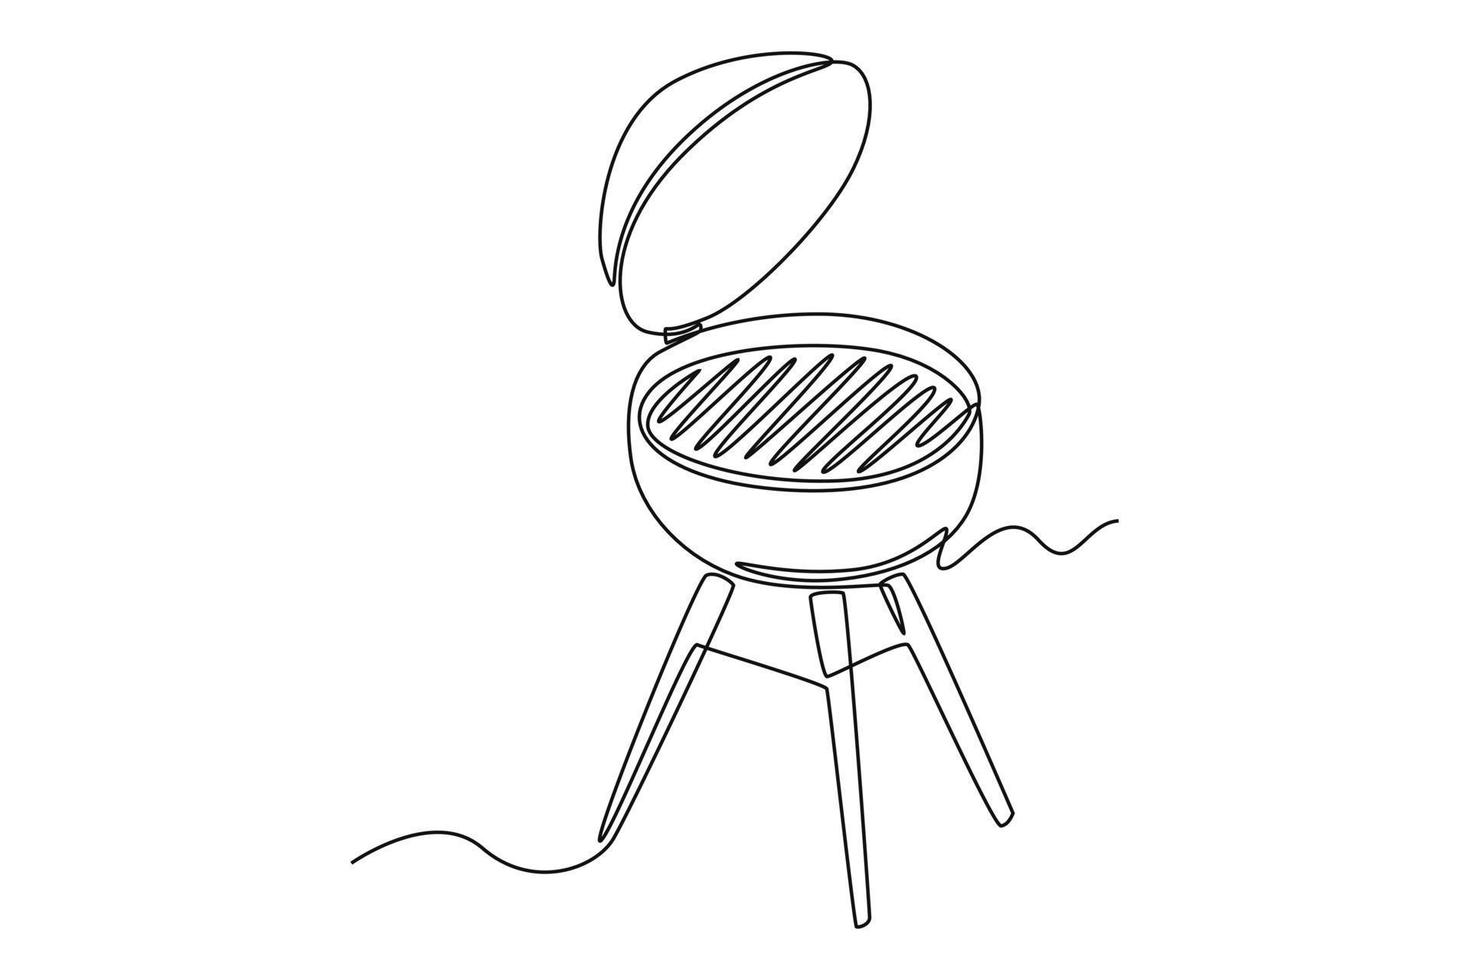 enda ett linje teckning bbq grill. matlagning redskap begrepp. kontinuerlig linje dra design grafisk vektor illustration.